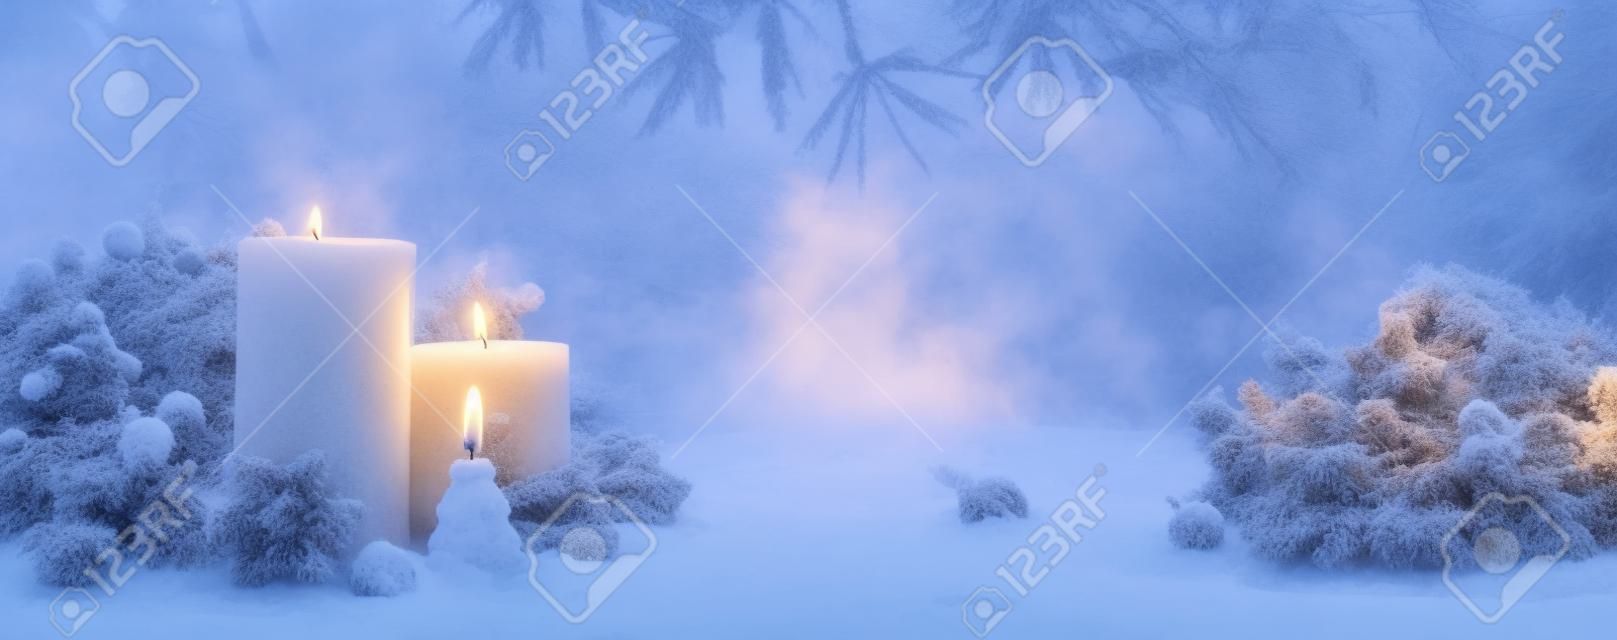 Zimowy krajobraz leśny z płonącymi świecami